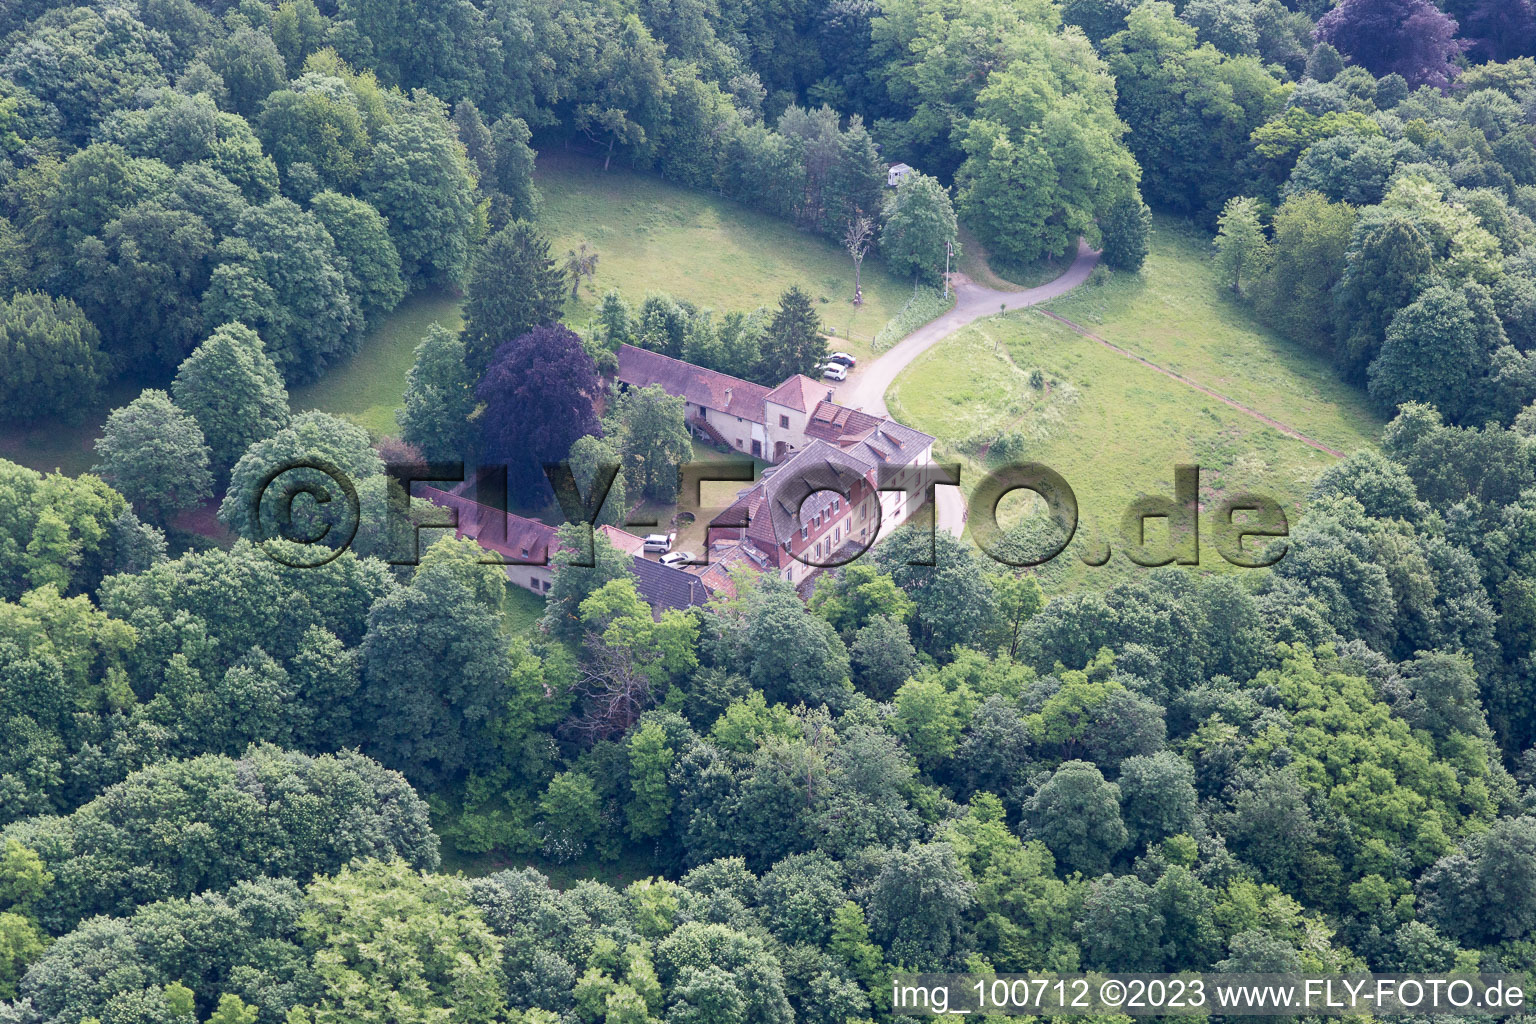 Sankt Germannshof dans le département Rhénanie-Palatinat, Allemagne du point de vue du drone